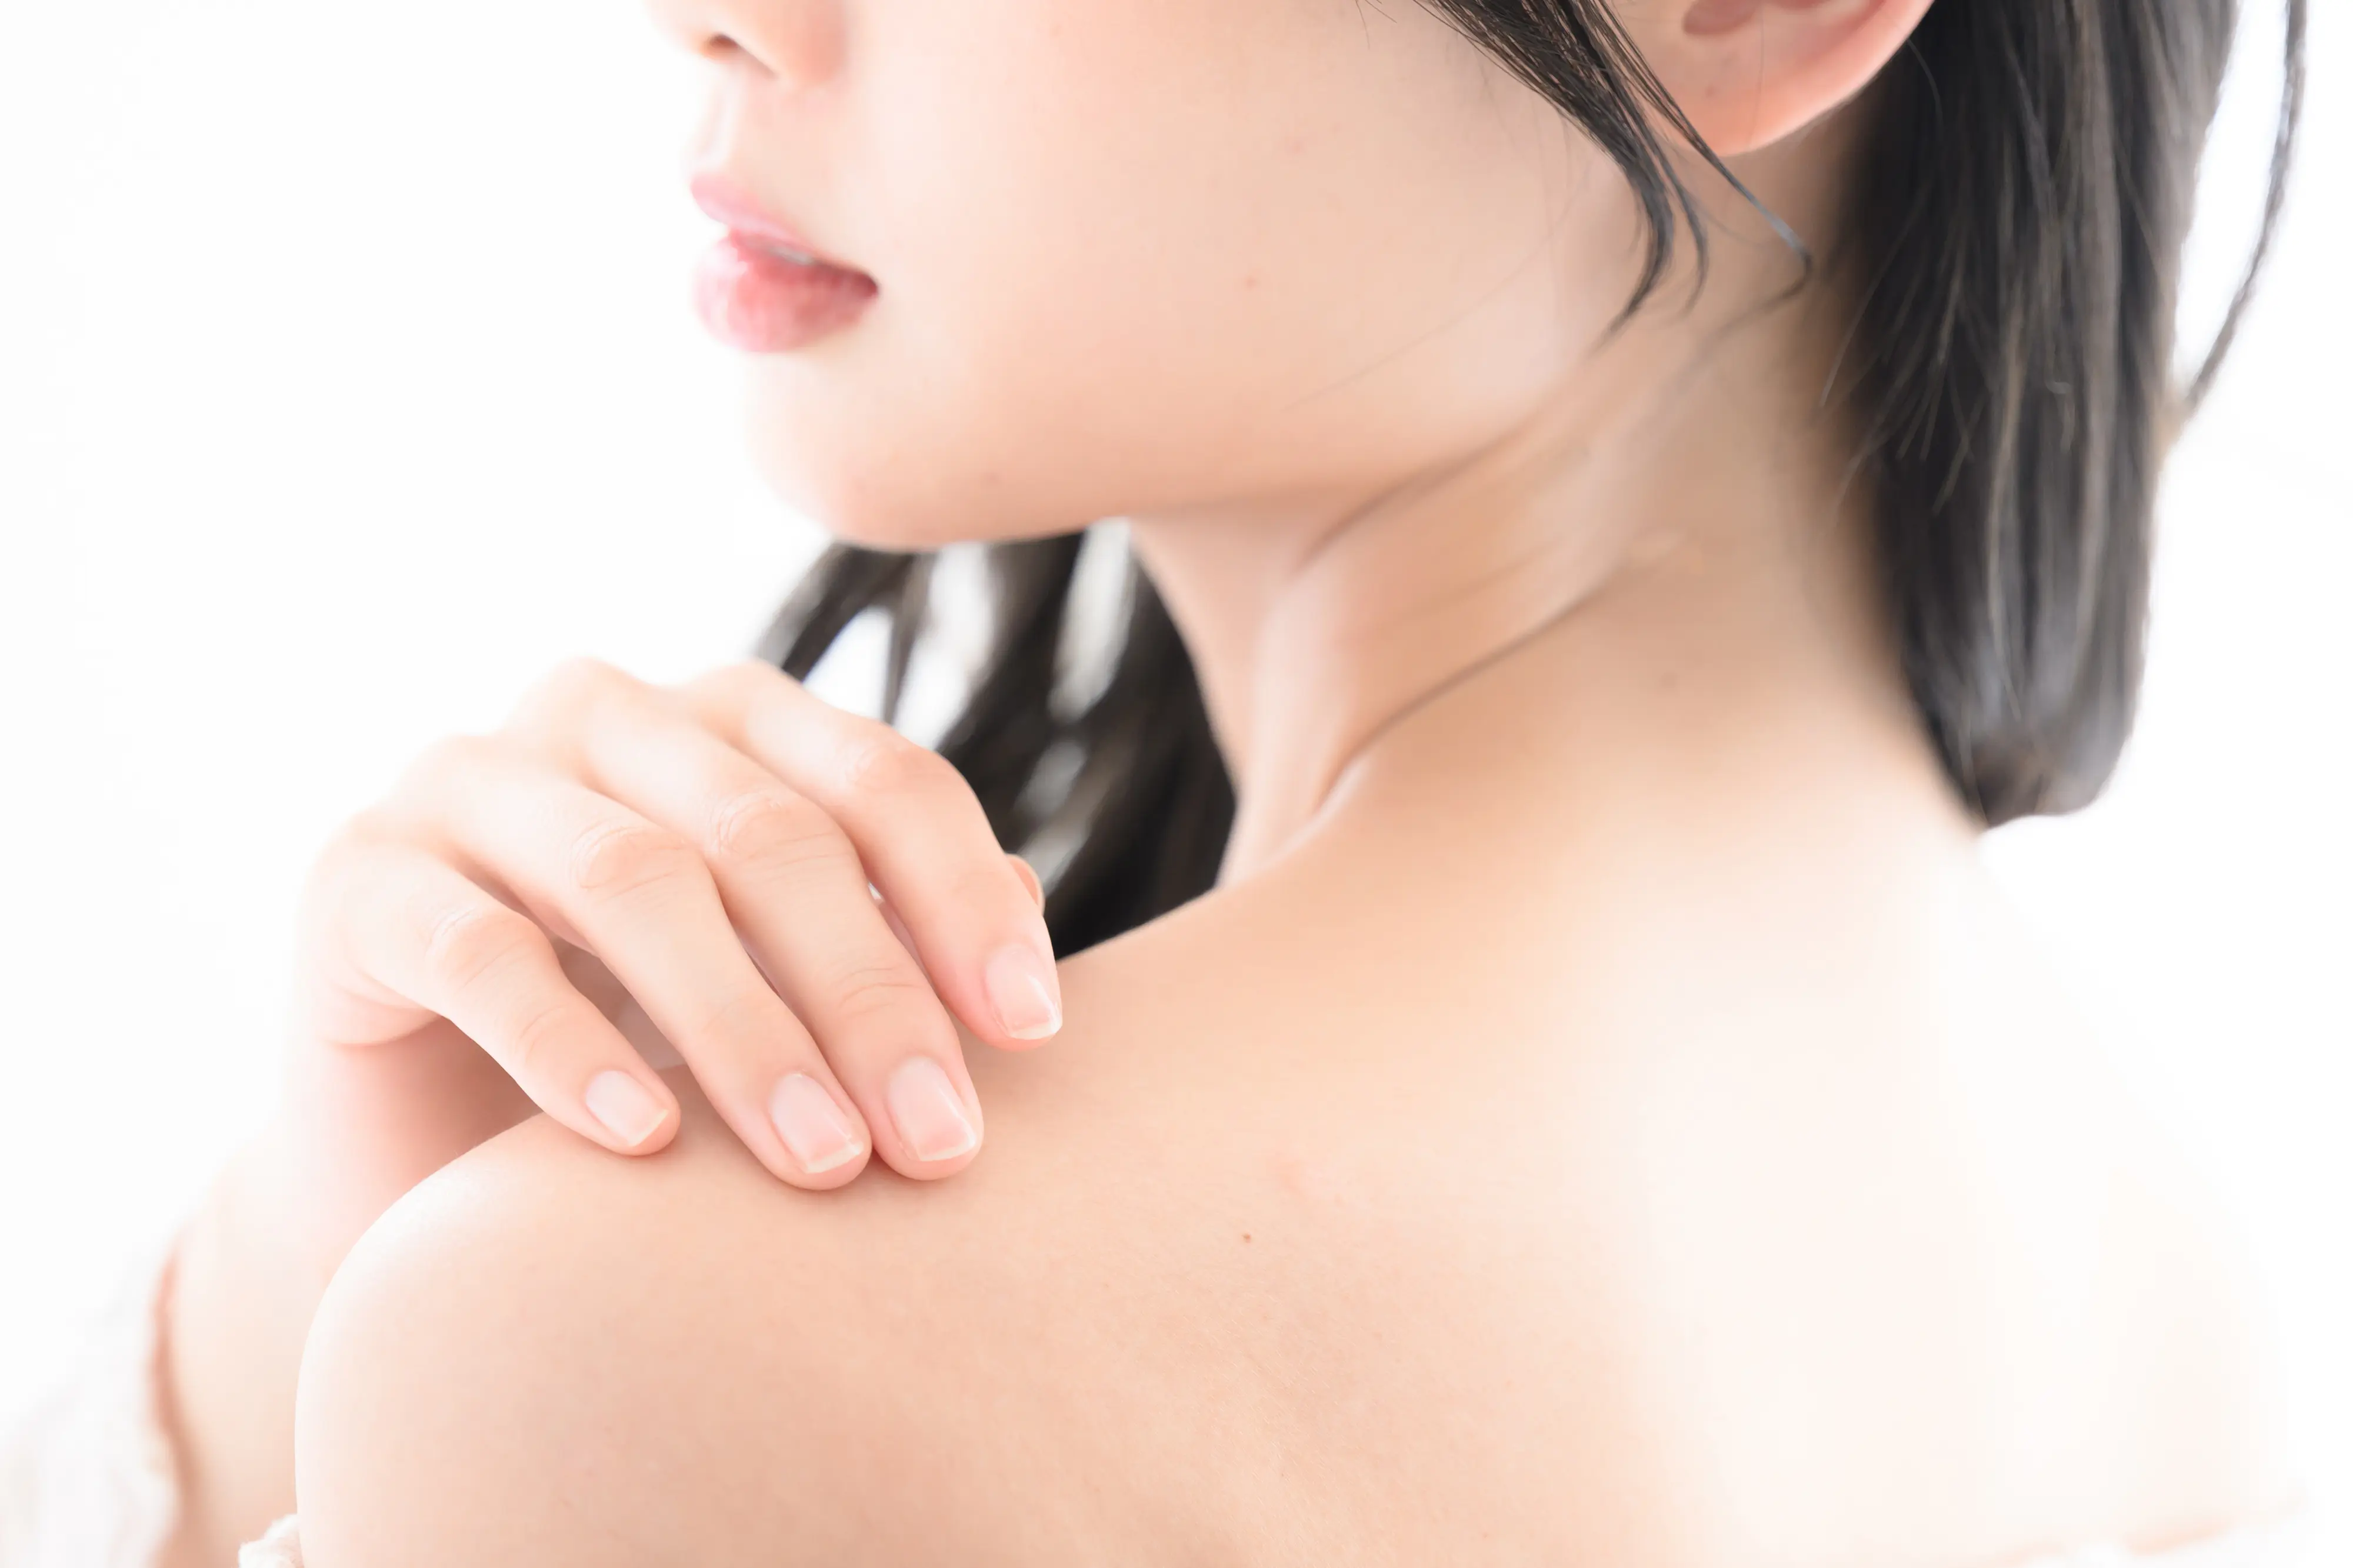 R皮膚科クリニックは大阪市大正区の皮膚科・美容皮膚科です。美容診療にも力を入れており、シミ、小ジワ、くすみ、毛穴の開き・黒ずみ・肝斑・赤ら顔など様々な肌トラブルのご相談も受付しています。お子様からご年配の方まで幅広く対応します。